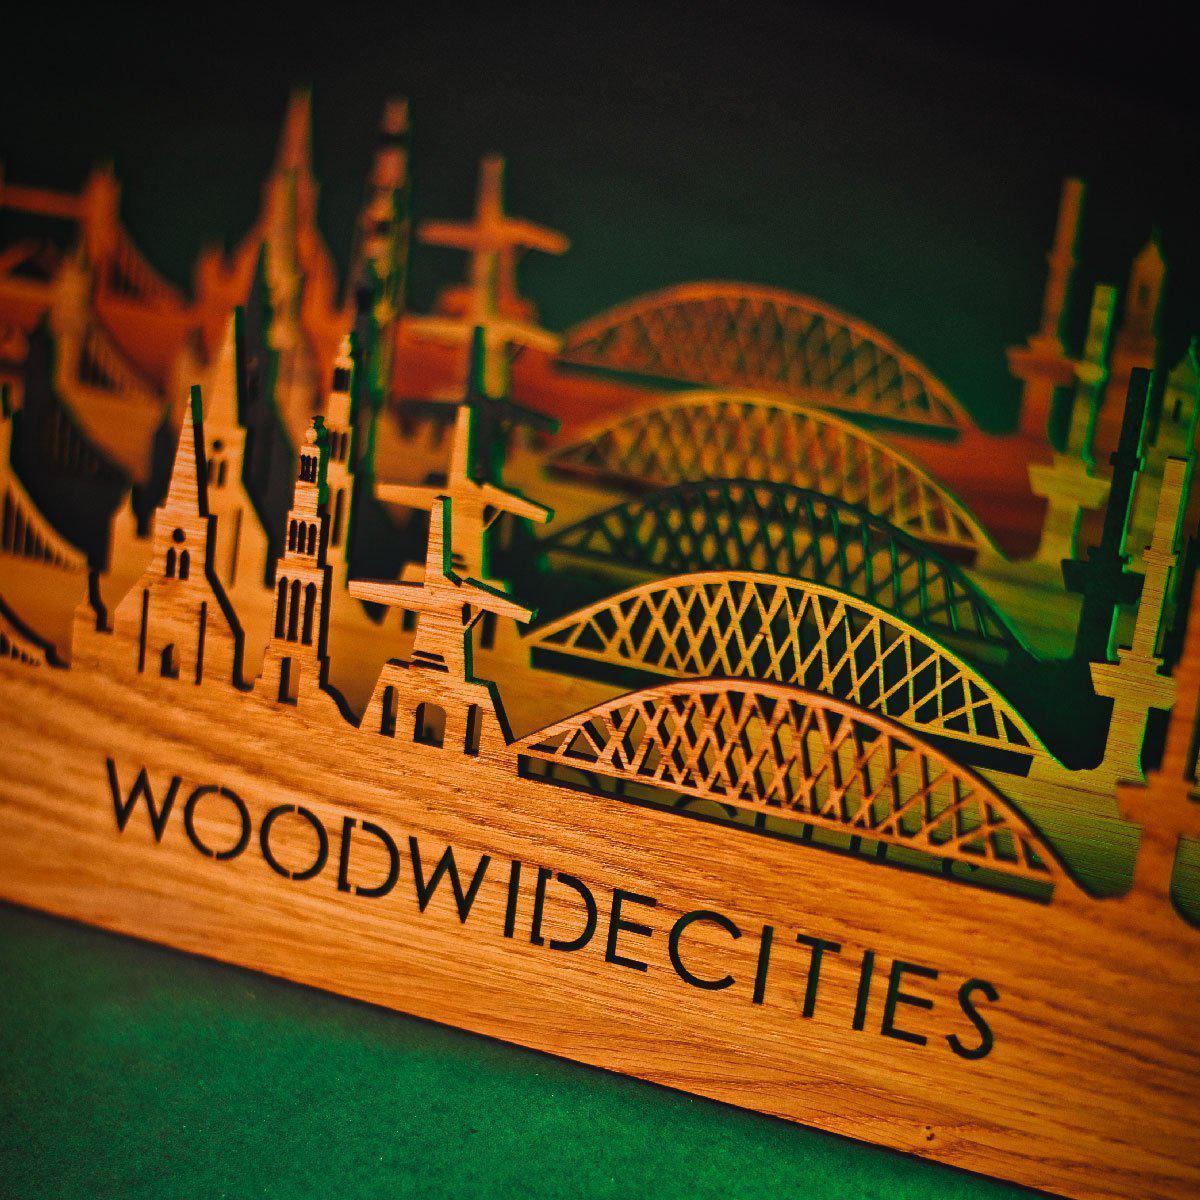 Skyline Klok Bergen op Zoom Palissander houten cadeau wanddecoratie relatiegeschenk van WoodWideCities